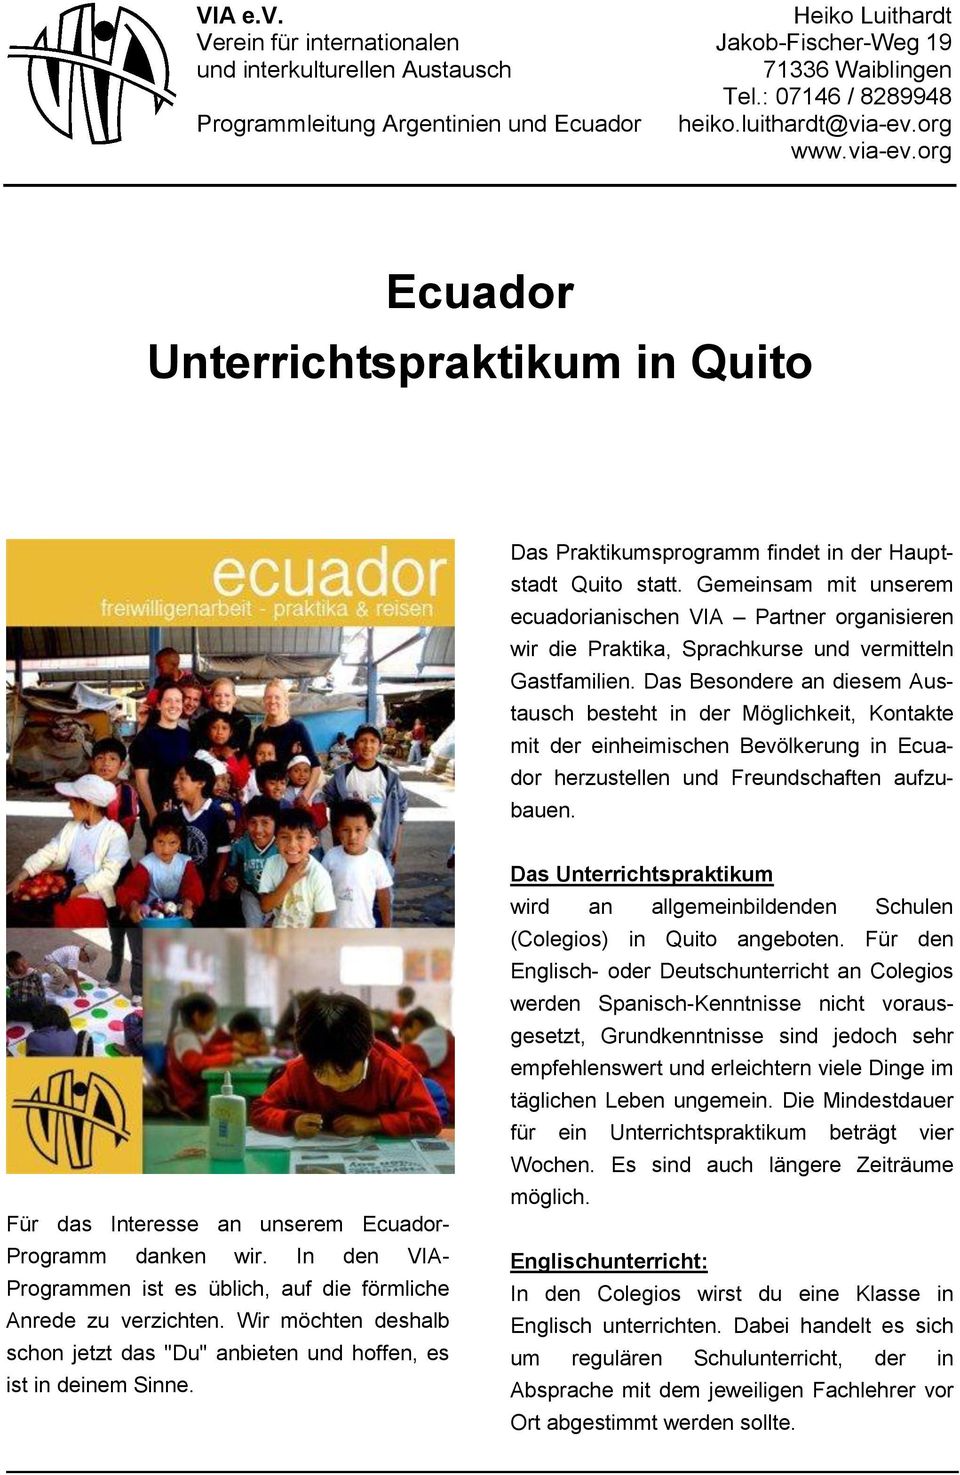 Gemeinsam mit unserem ecuadorianischen VIA Partner organisieren wir die Praktika, Sprachkurse und vermitteln Gastfamilien.